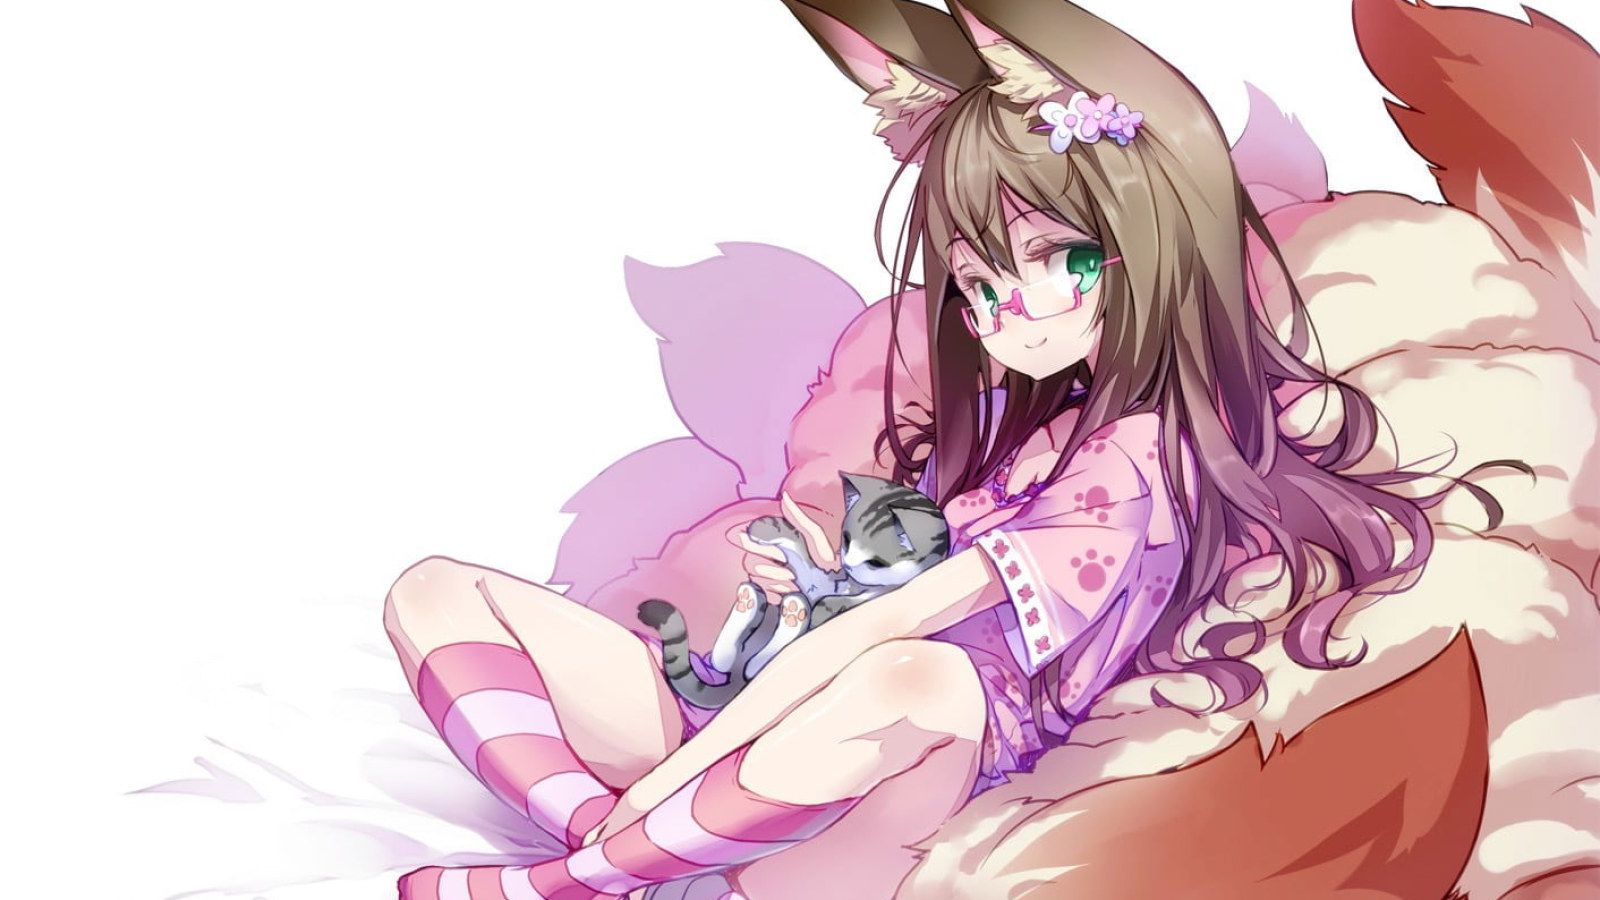 Female anime character holding cat wallpaper, anime girls, fox girl, animal ears • Wallpaper For You HD Wallpaper For Desktop & Mobile